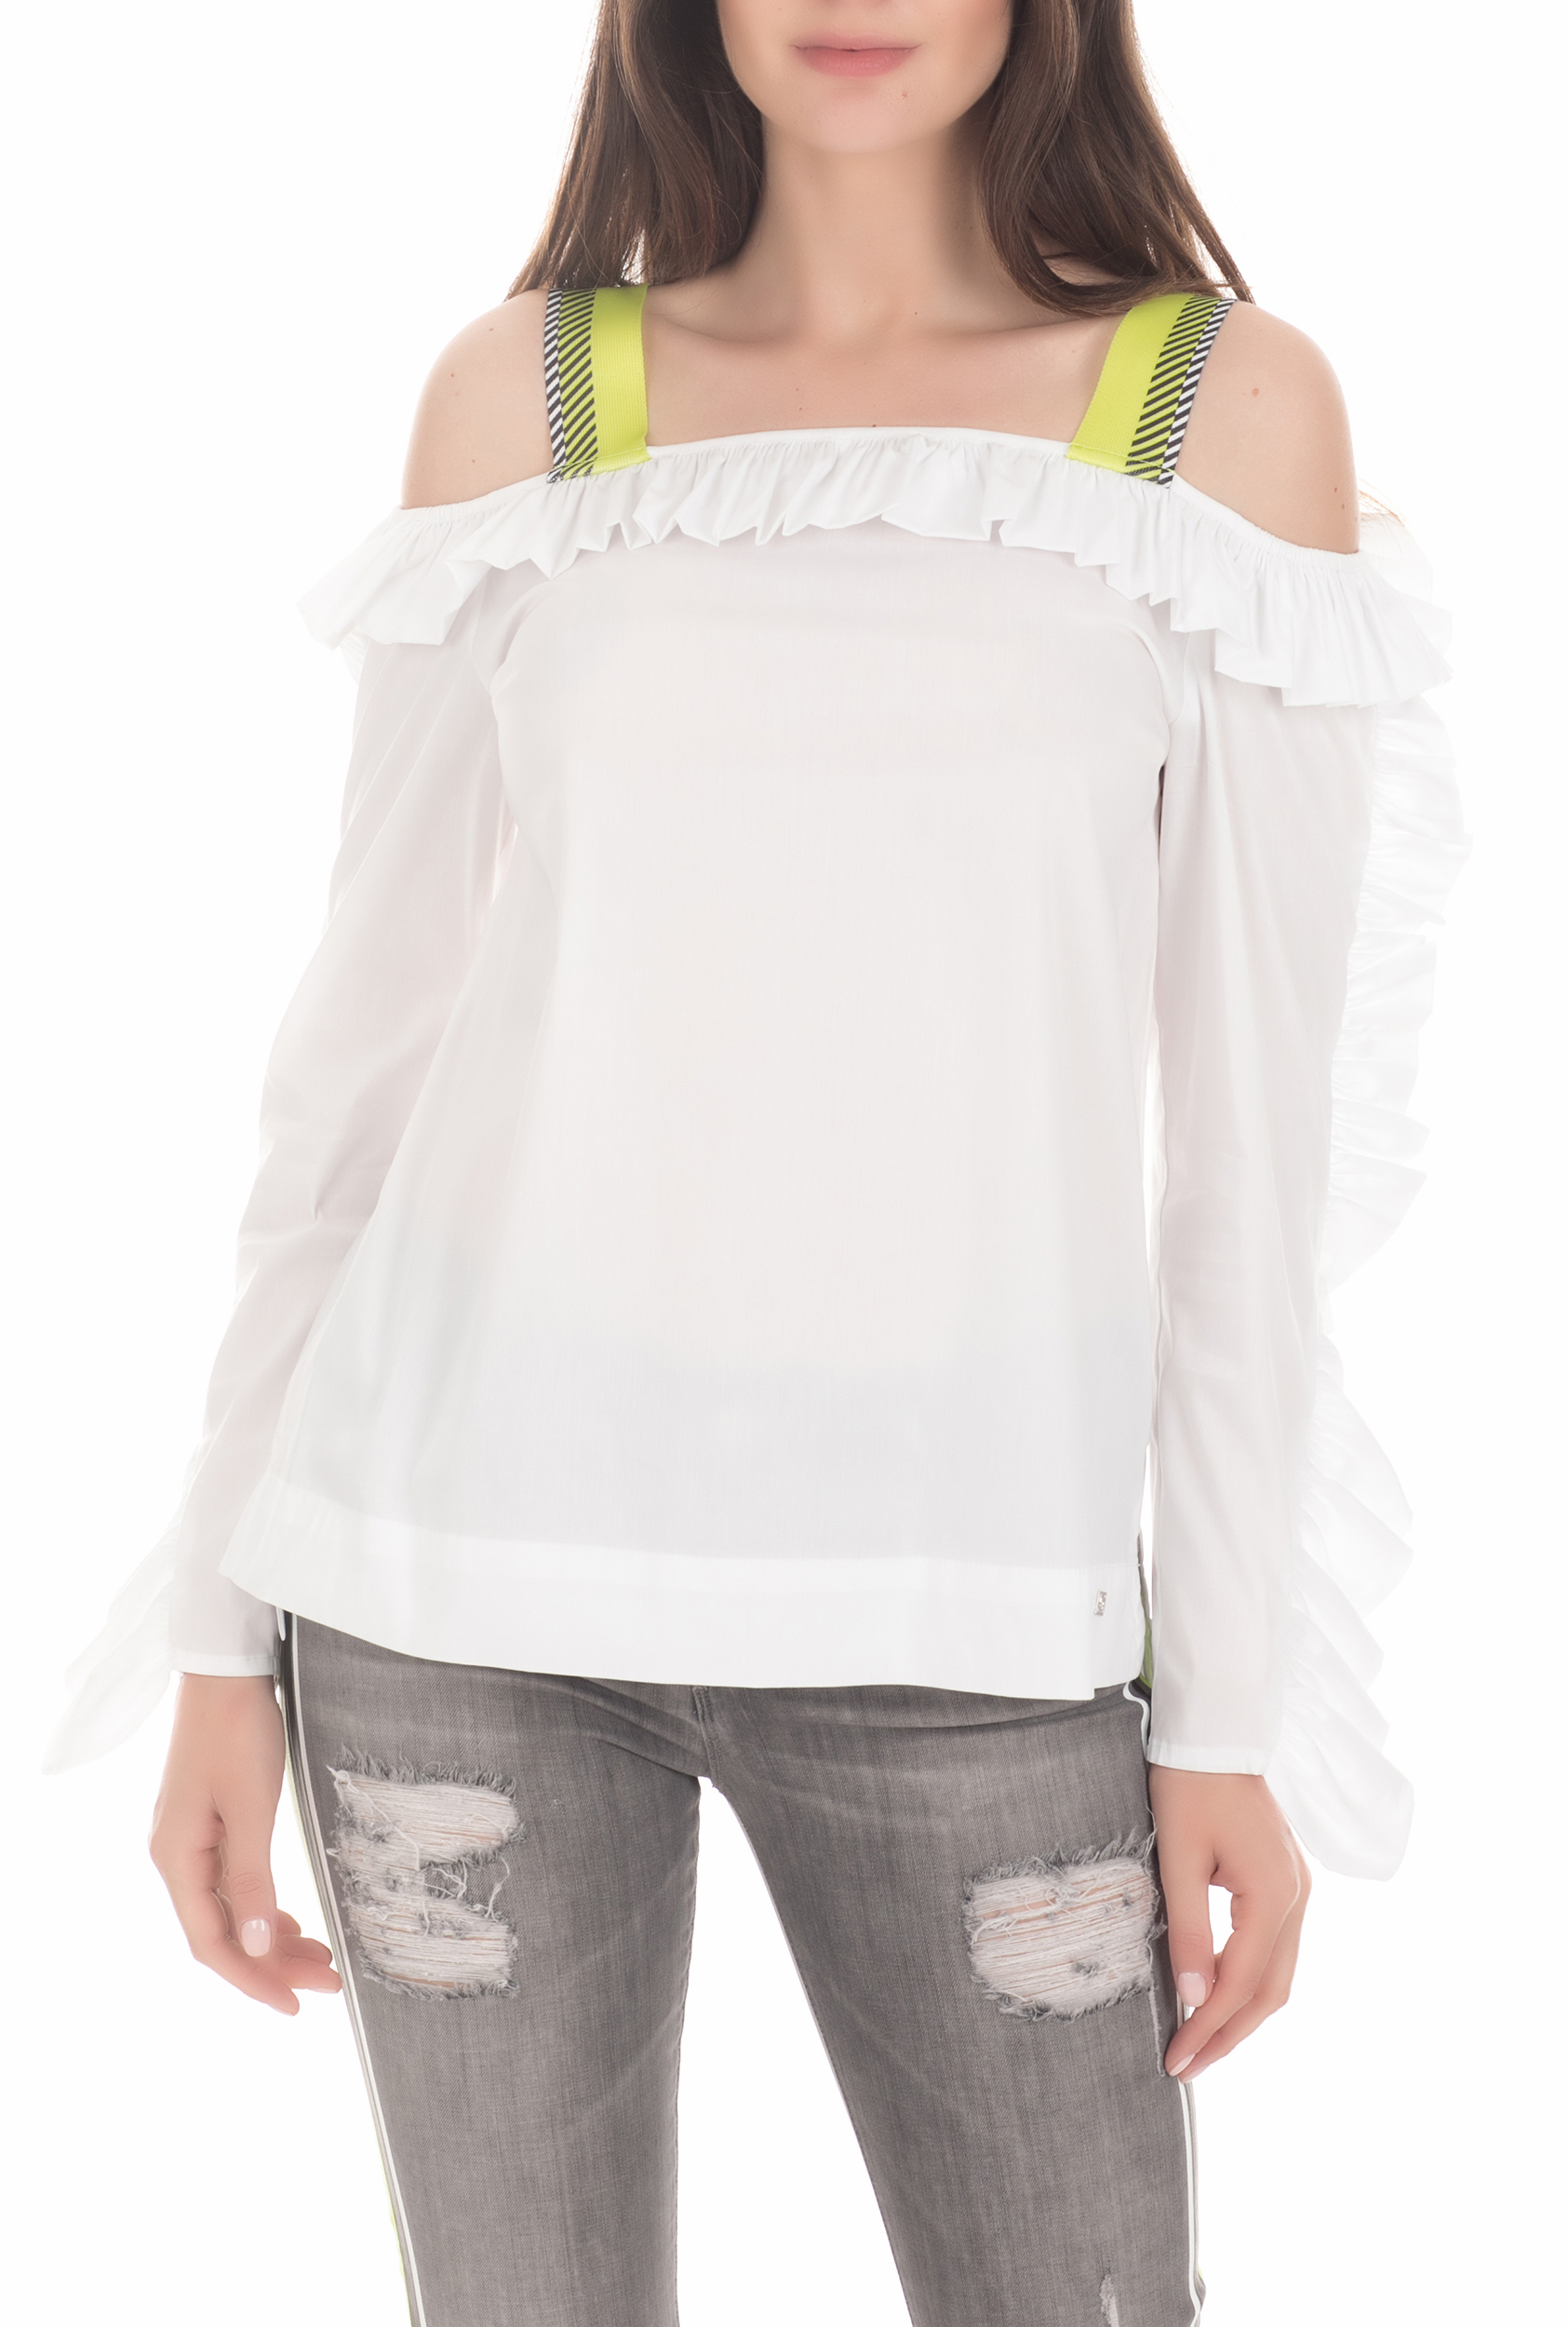 Γυναικεία/Ρούχα/Μπλούζες/Μακρυμάνικες BYBLOS - Γυναικεία μπλούζα BYBLOS OPEN SHOULDER λευκή